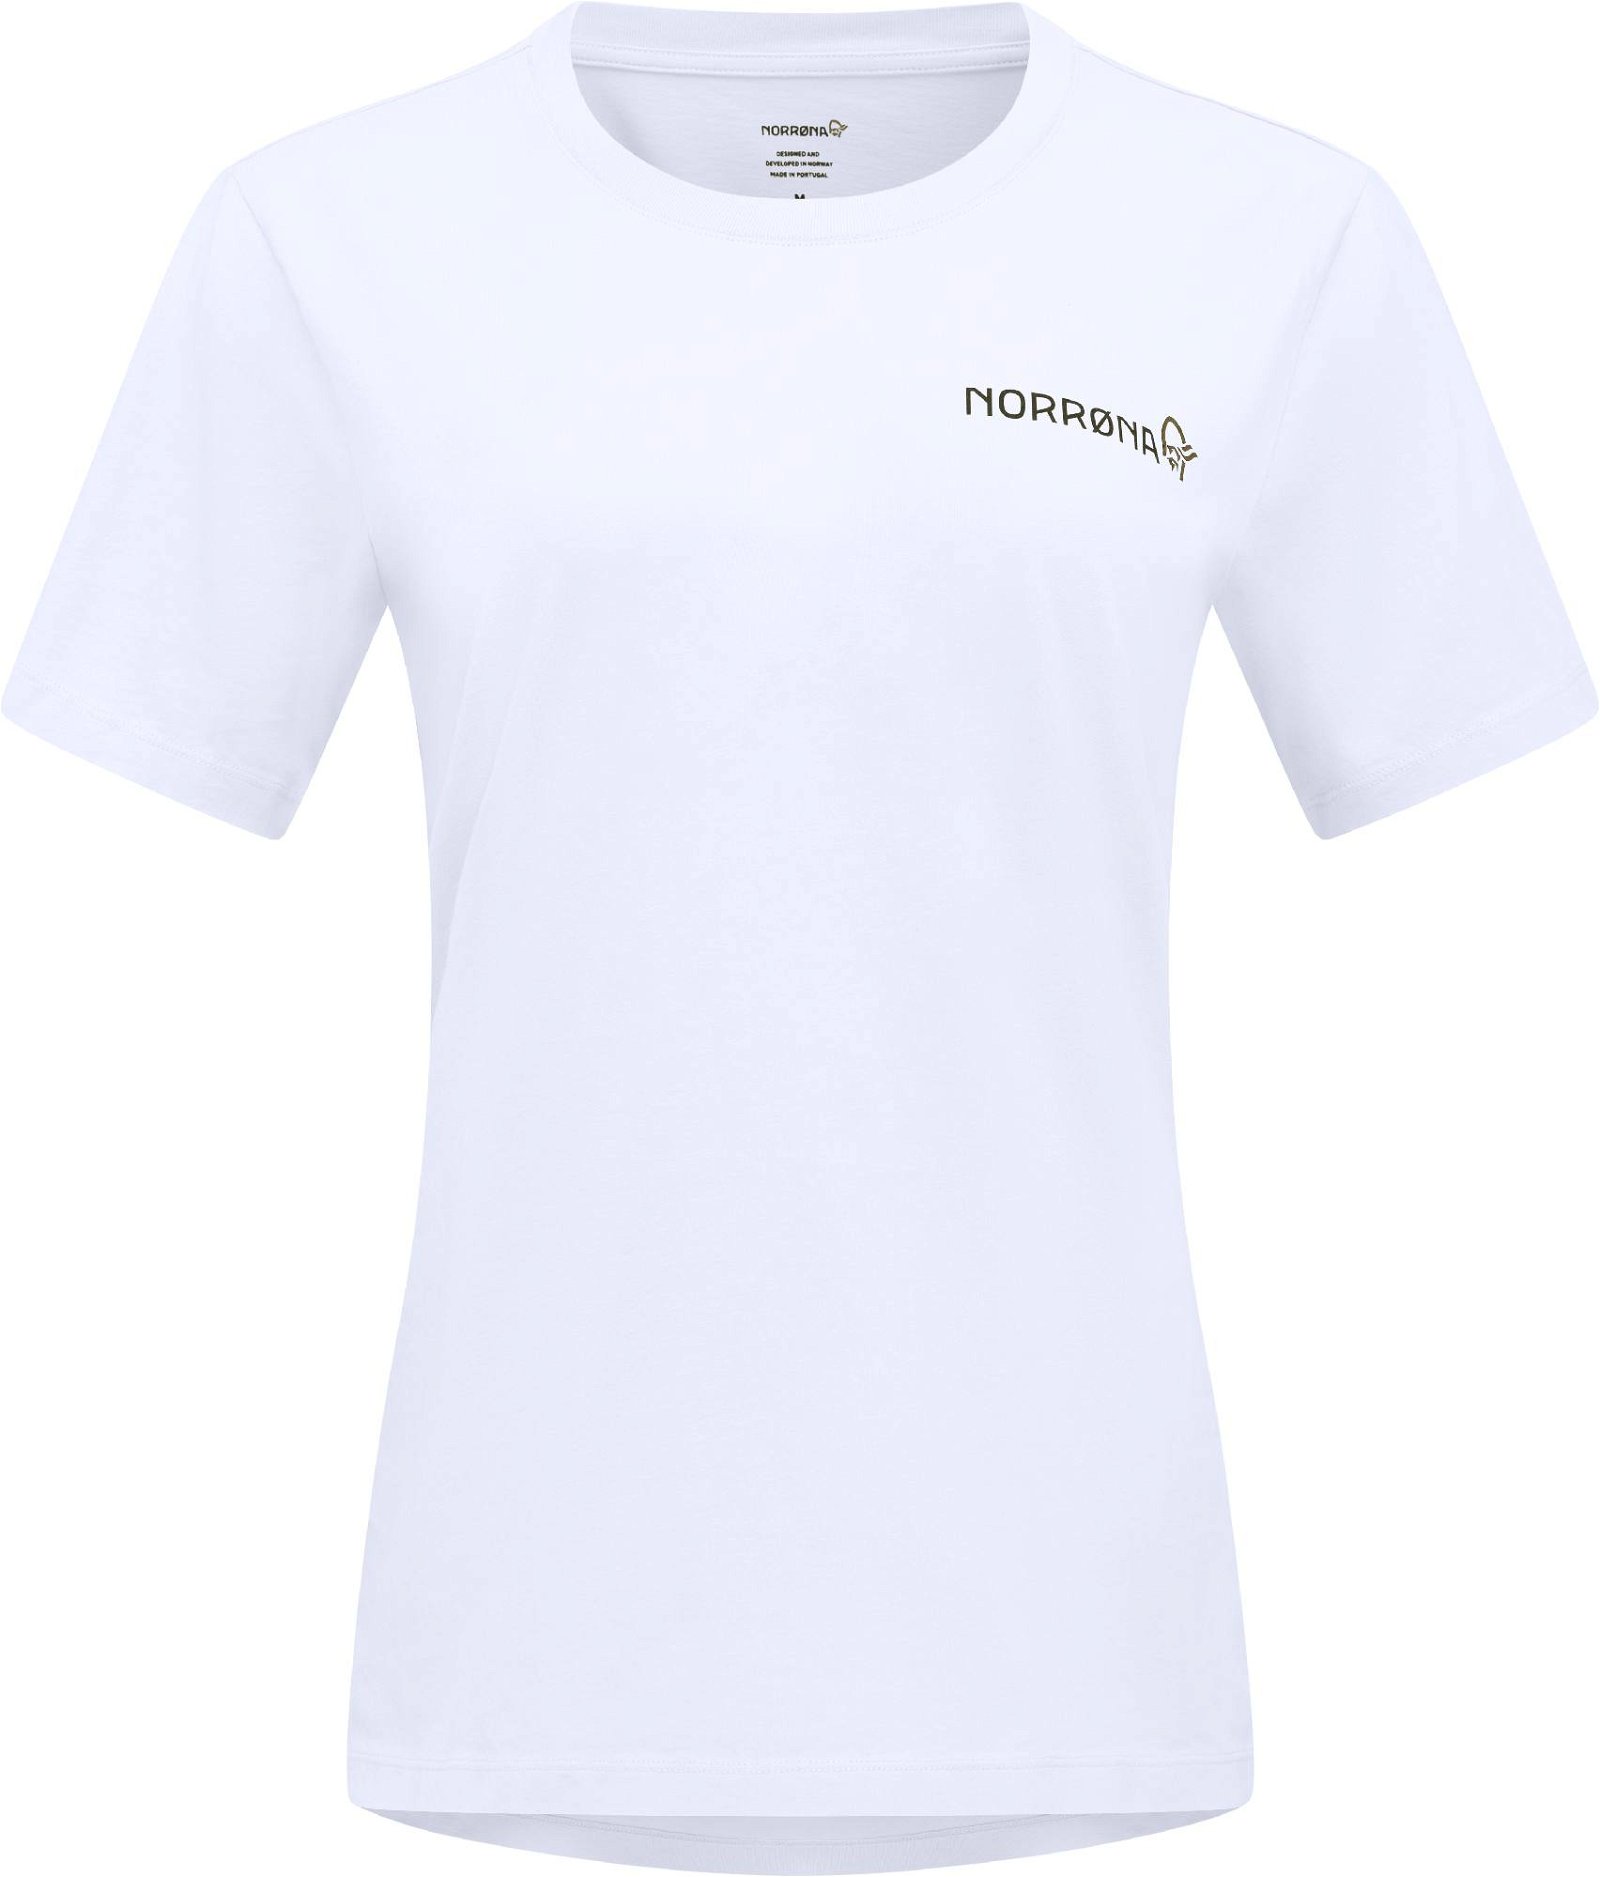 Norrøna /29 Cotton DuoTone T-Shirt W's